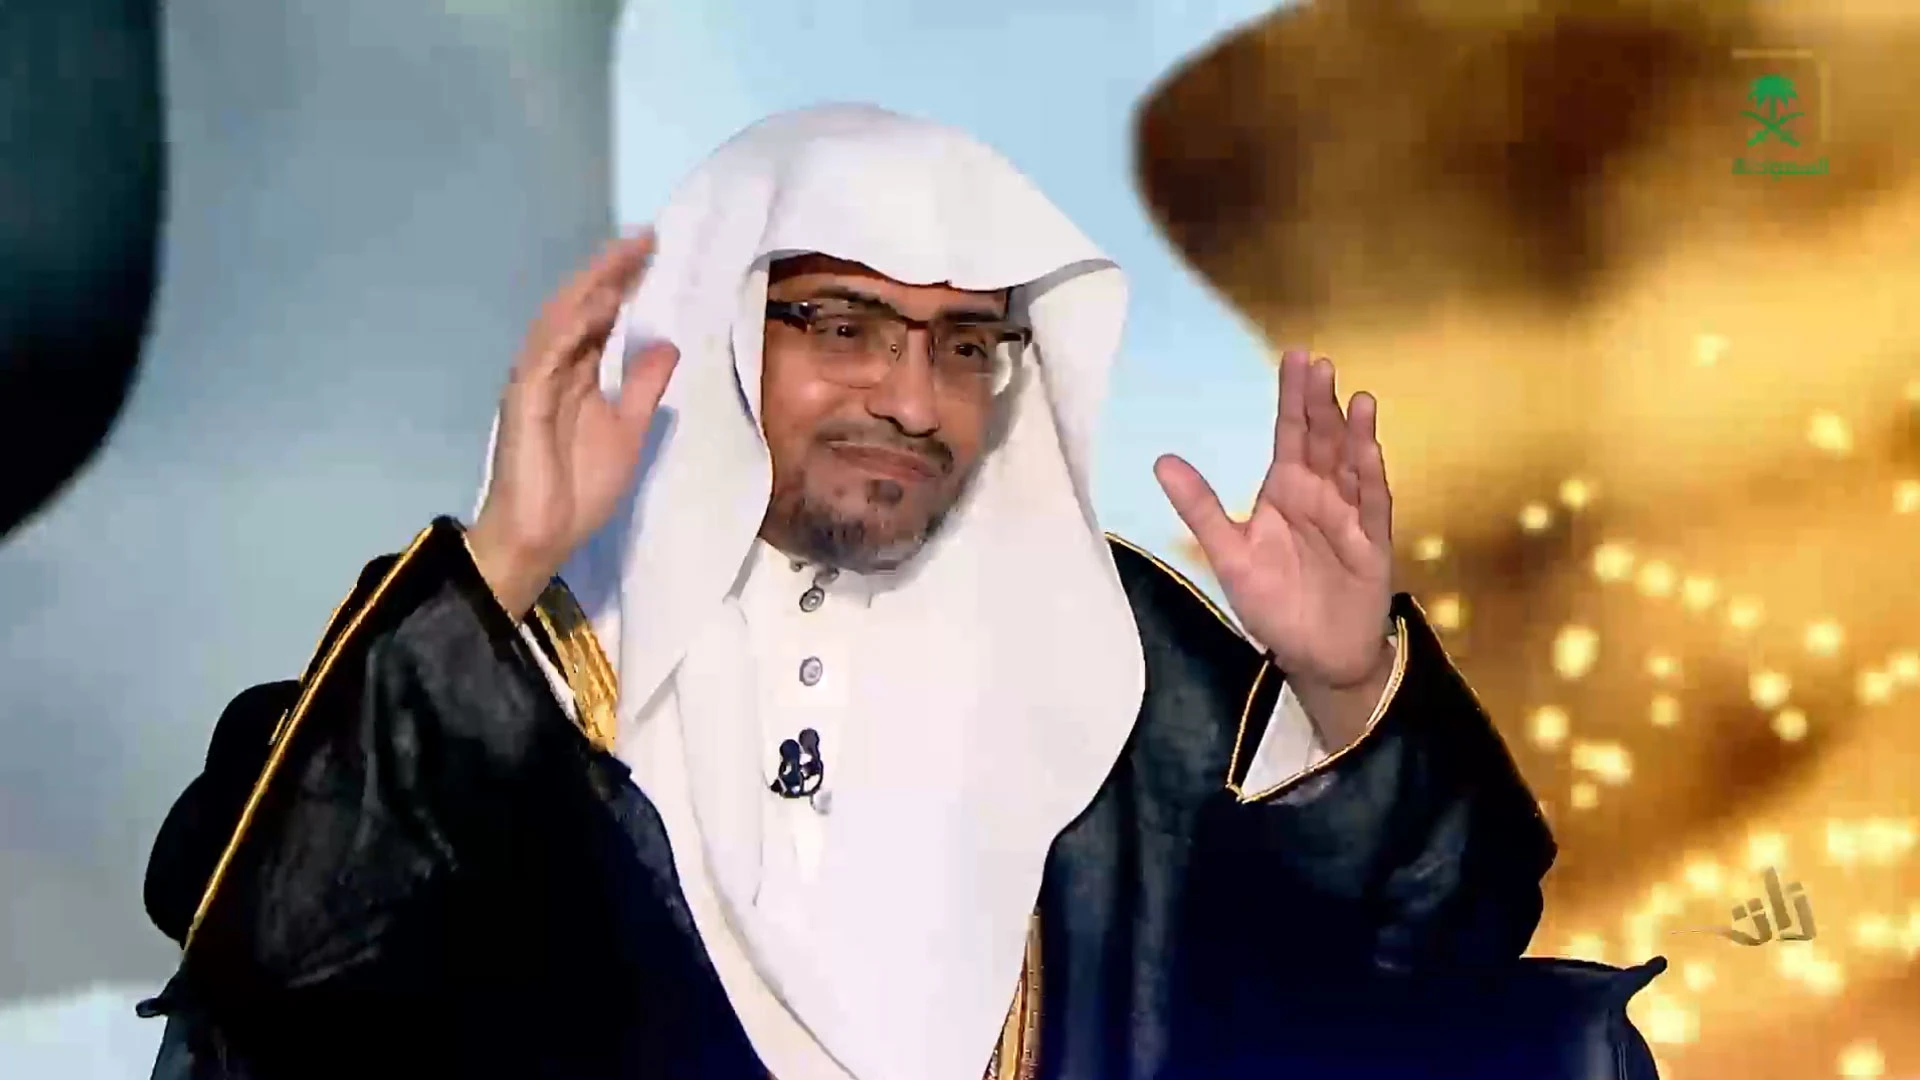 الشيخ صالح المغامسي داعية سعودي يثير الجدل.webp